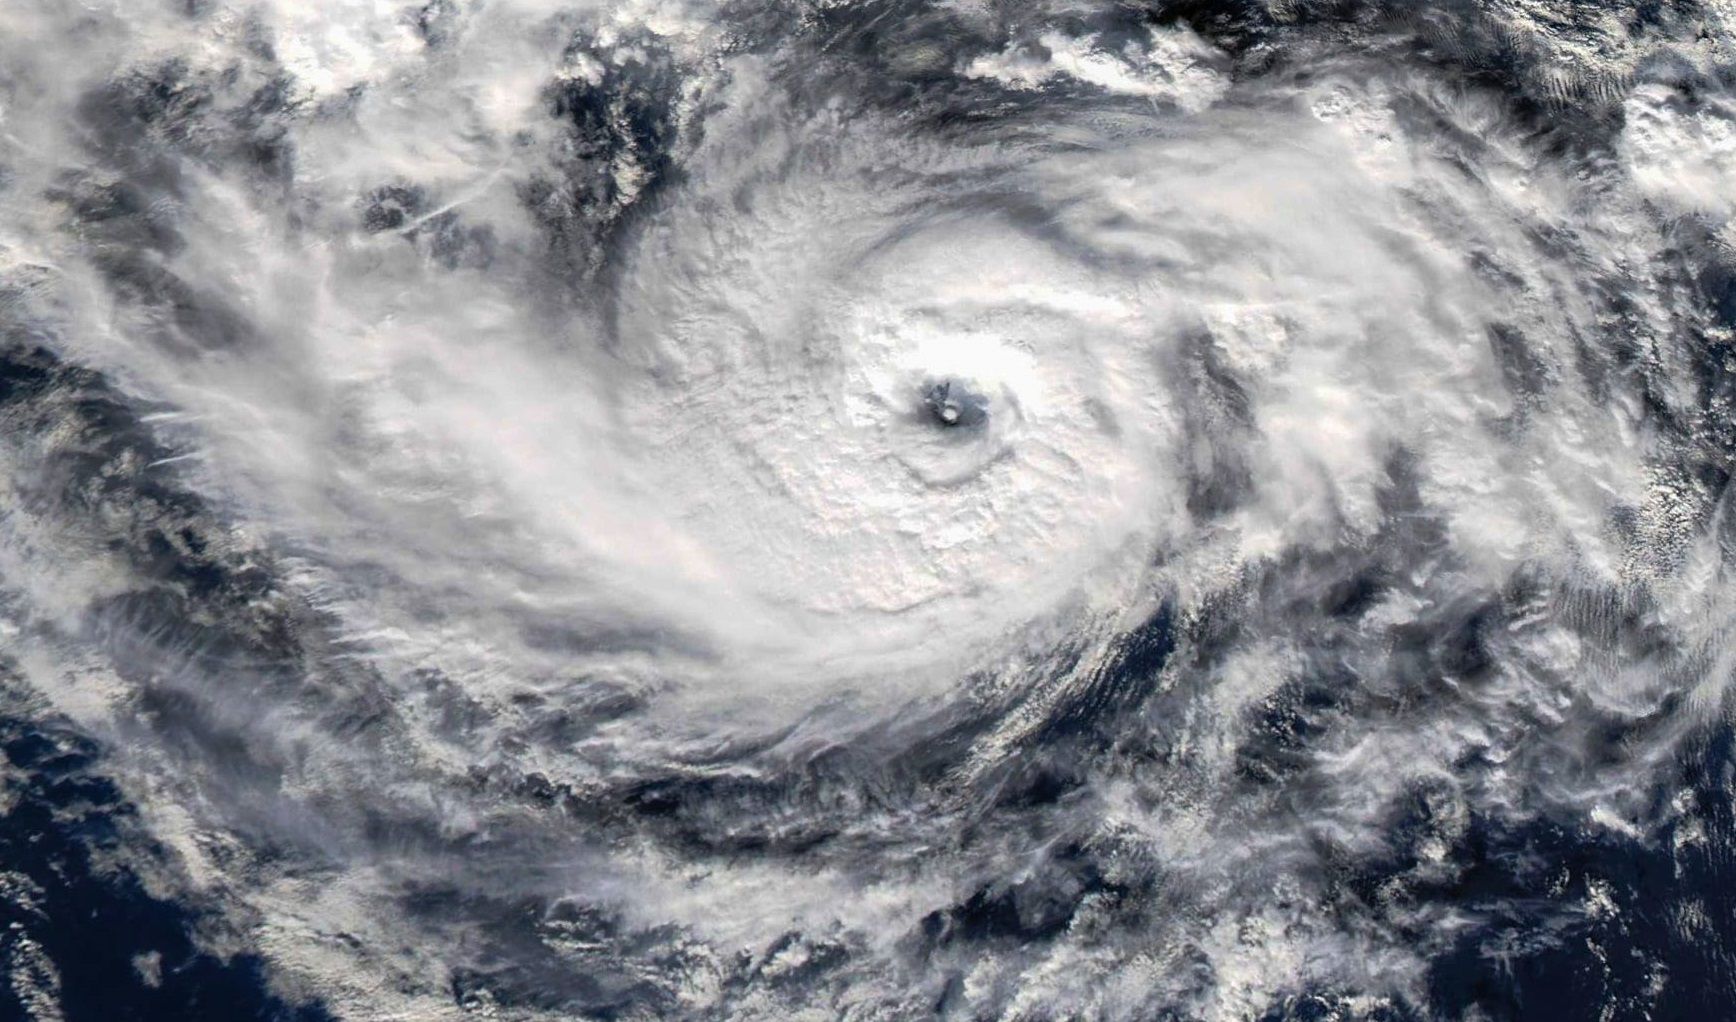 Ураган се формира за пръв път в историята близо до Испания